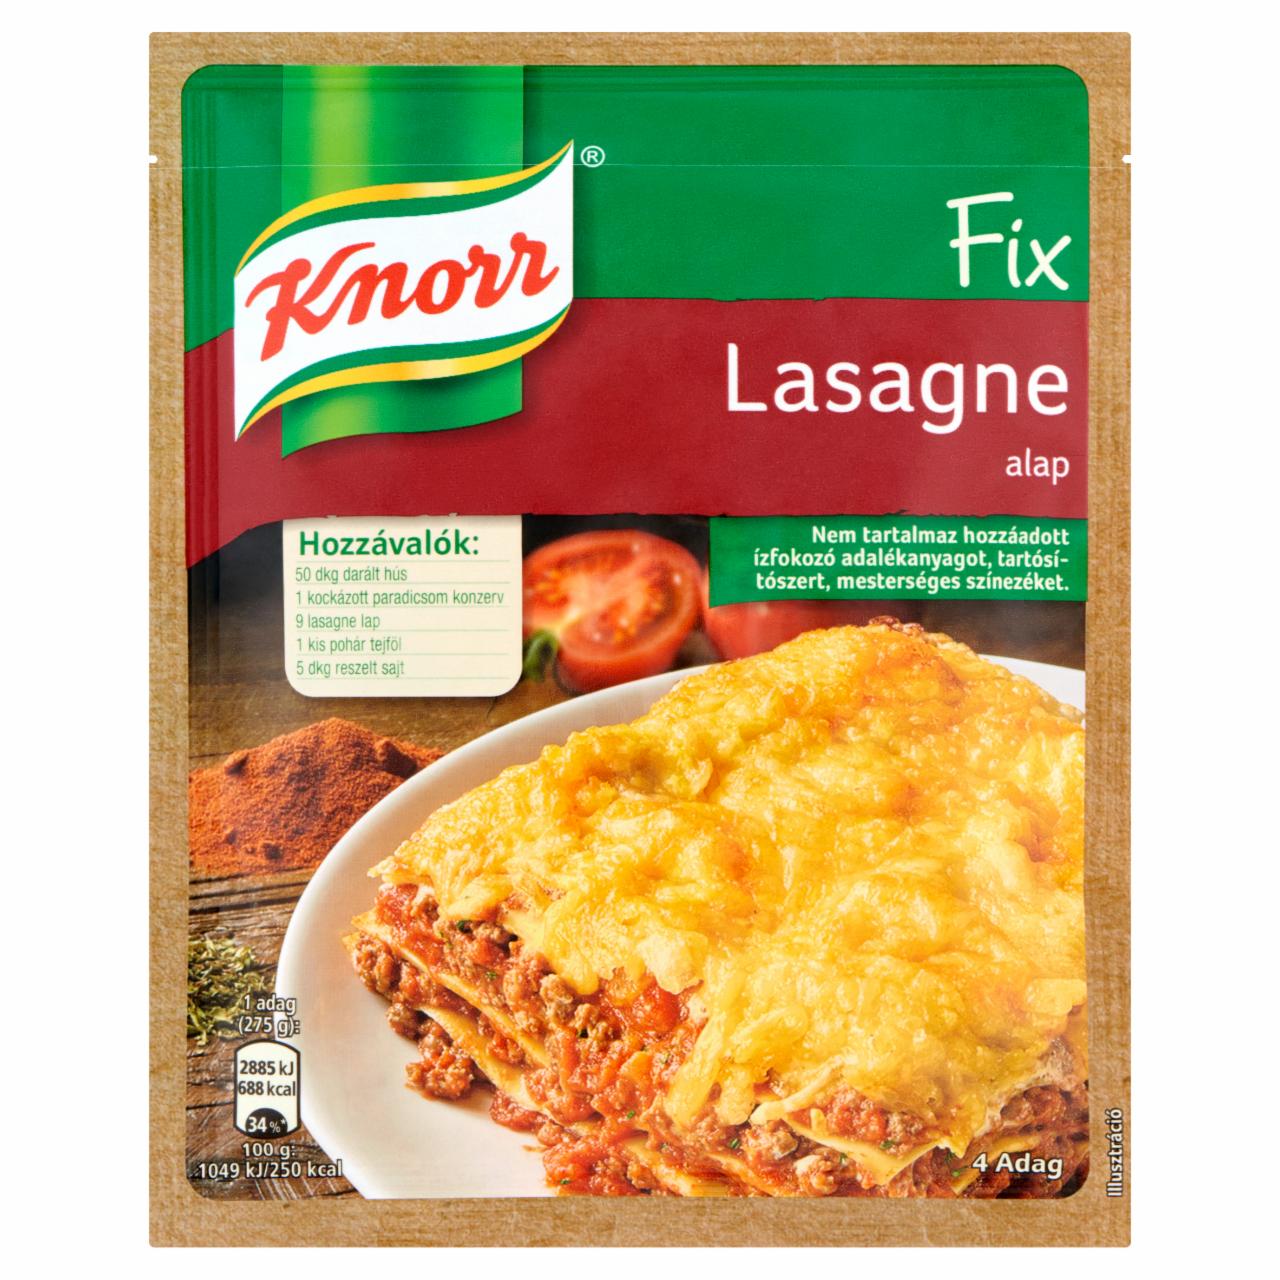 Képek - Knorr Fix lasagne alap 56 g